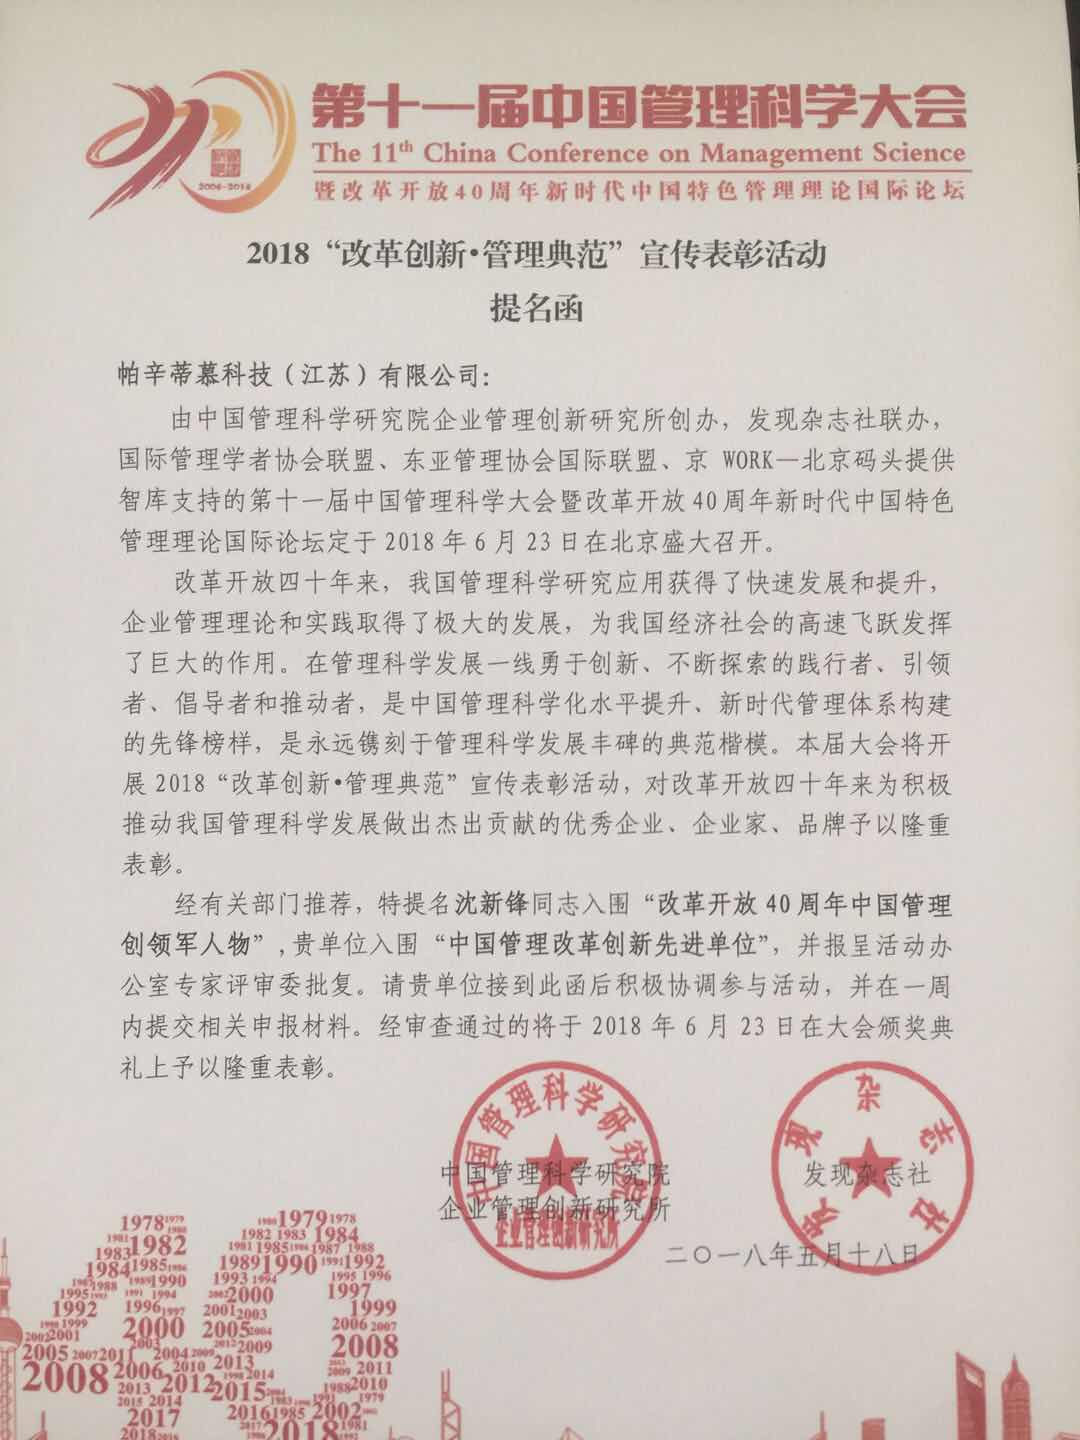 帕辛蒂慕科技（江苏）有限公司荣获中国管理科学研究院提名